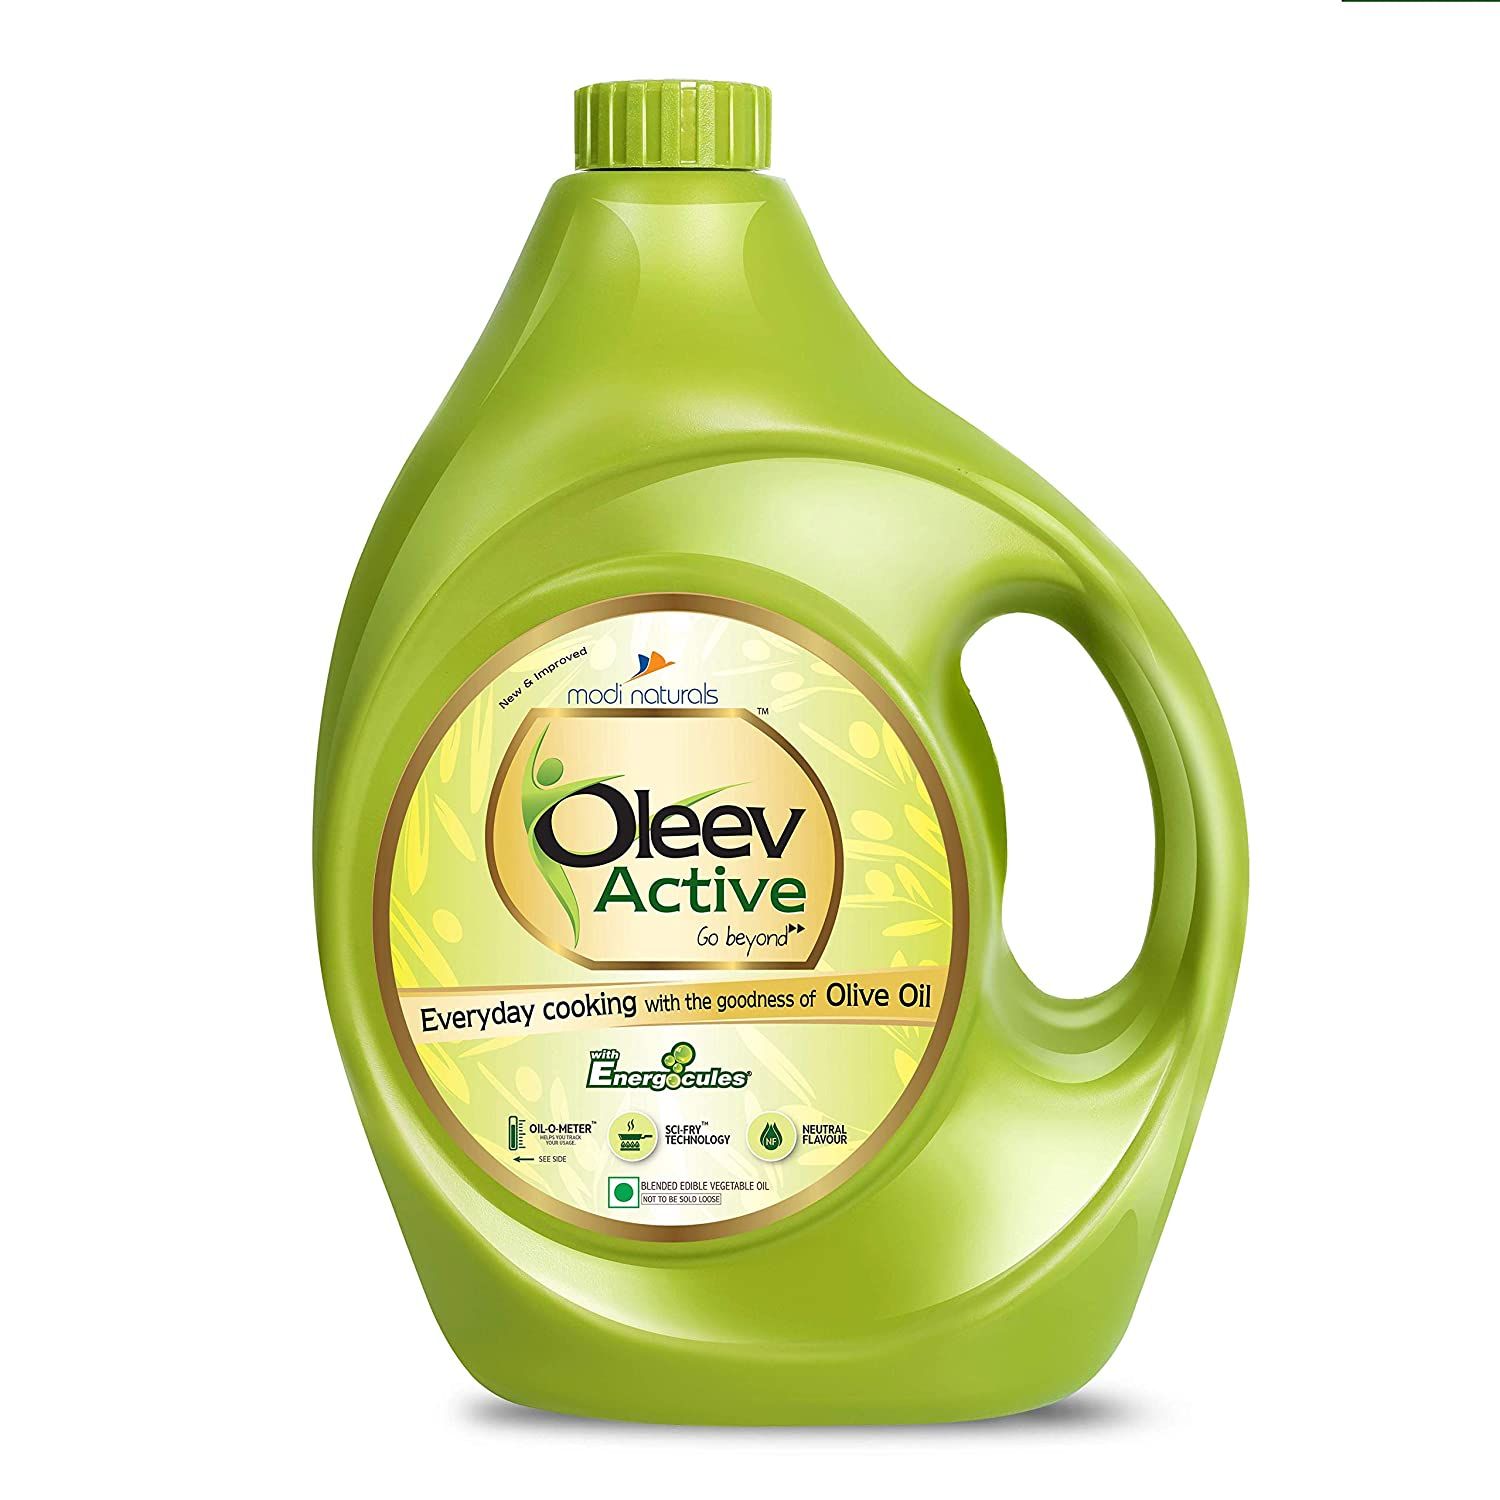 Oleev Active Olive Oil Image